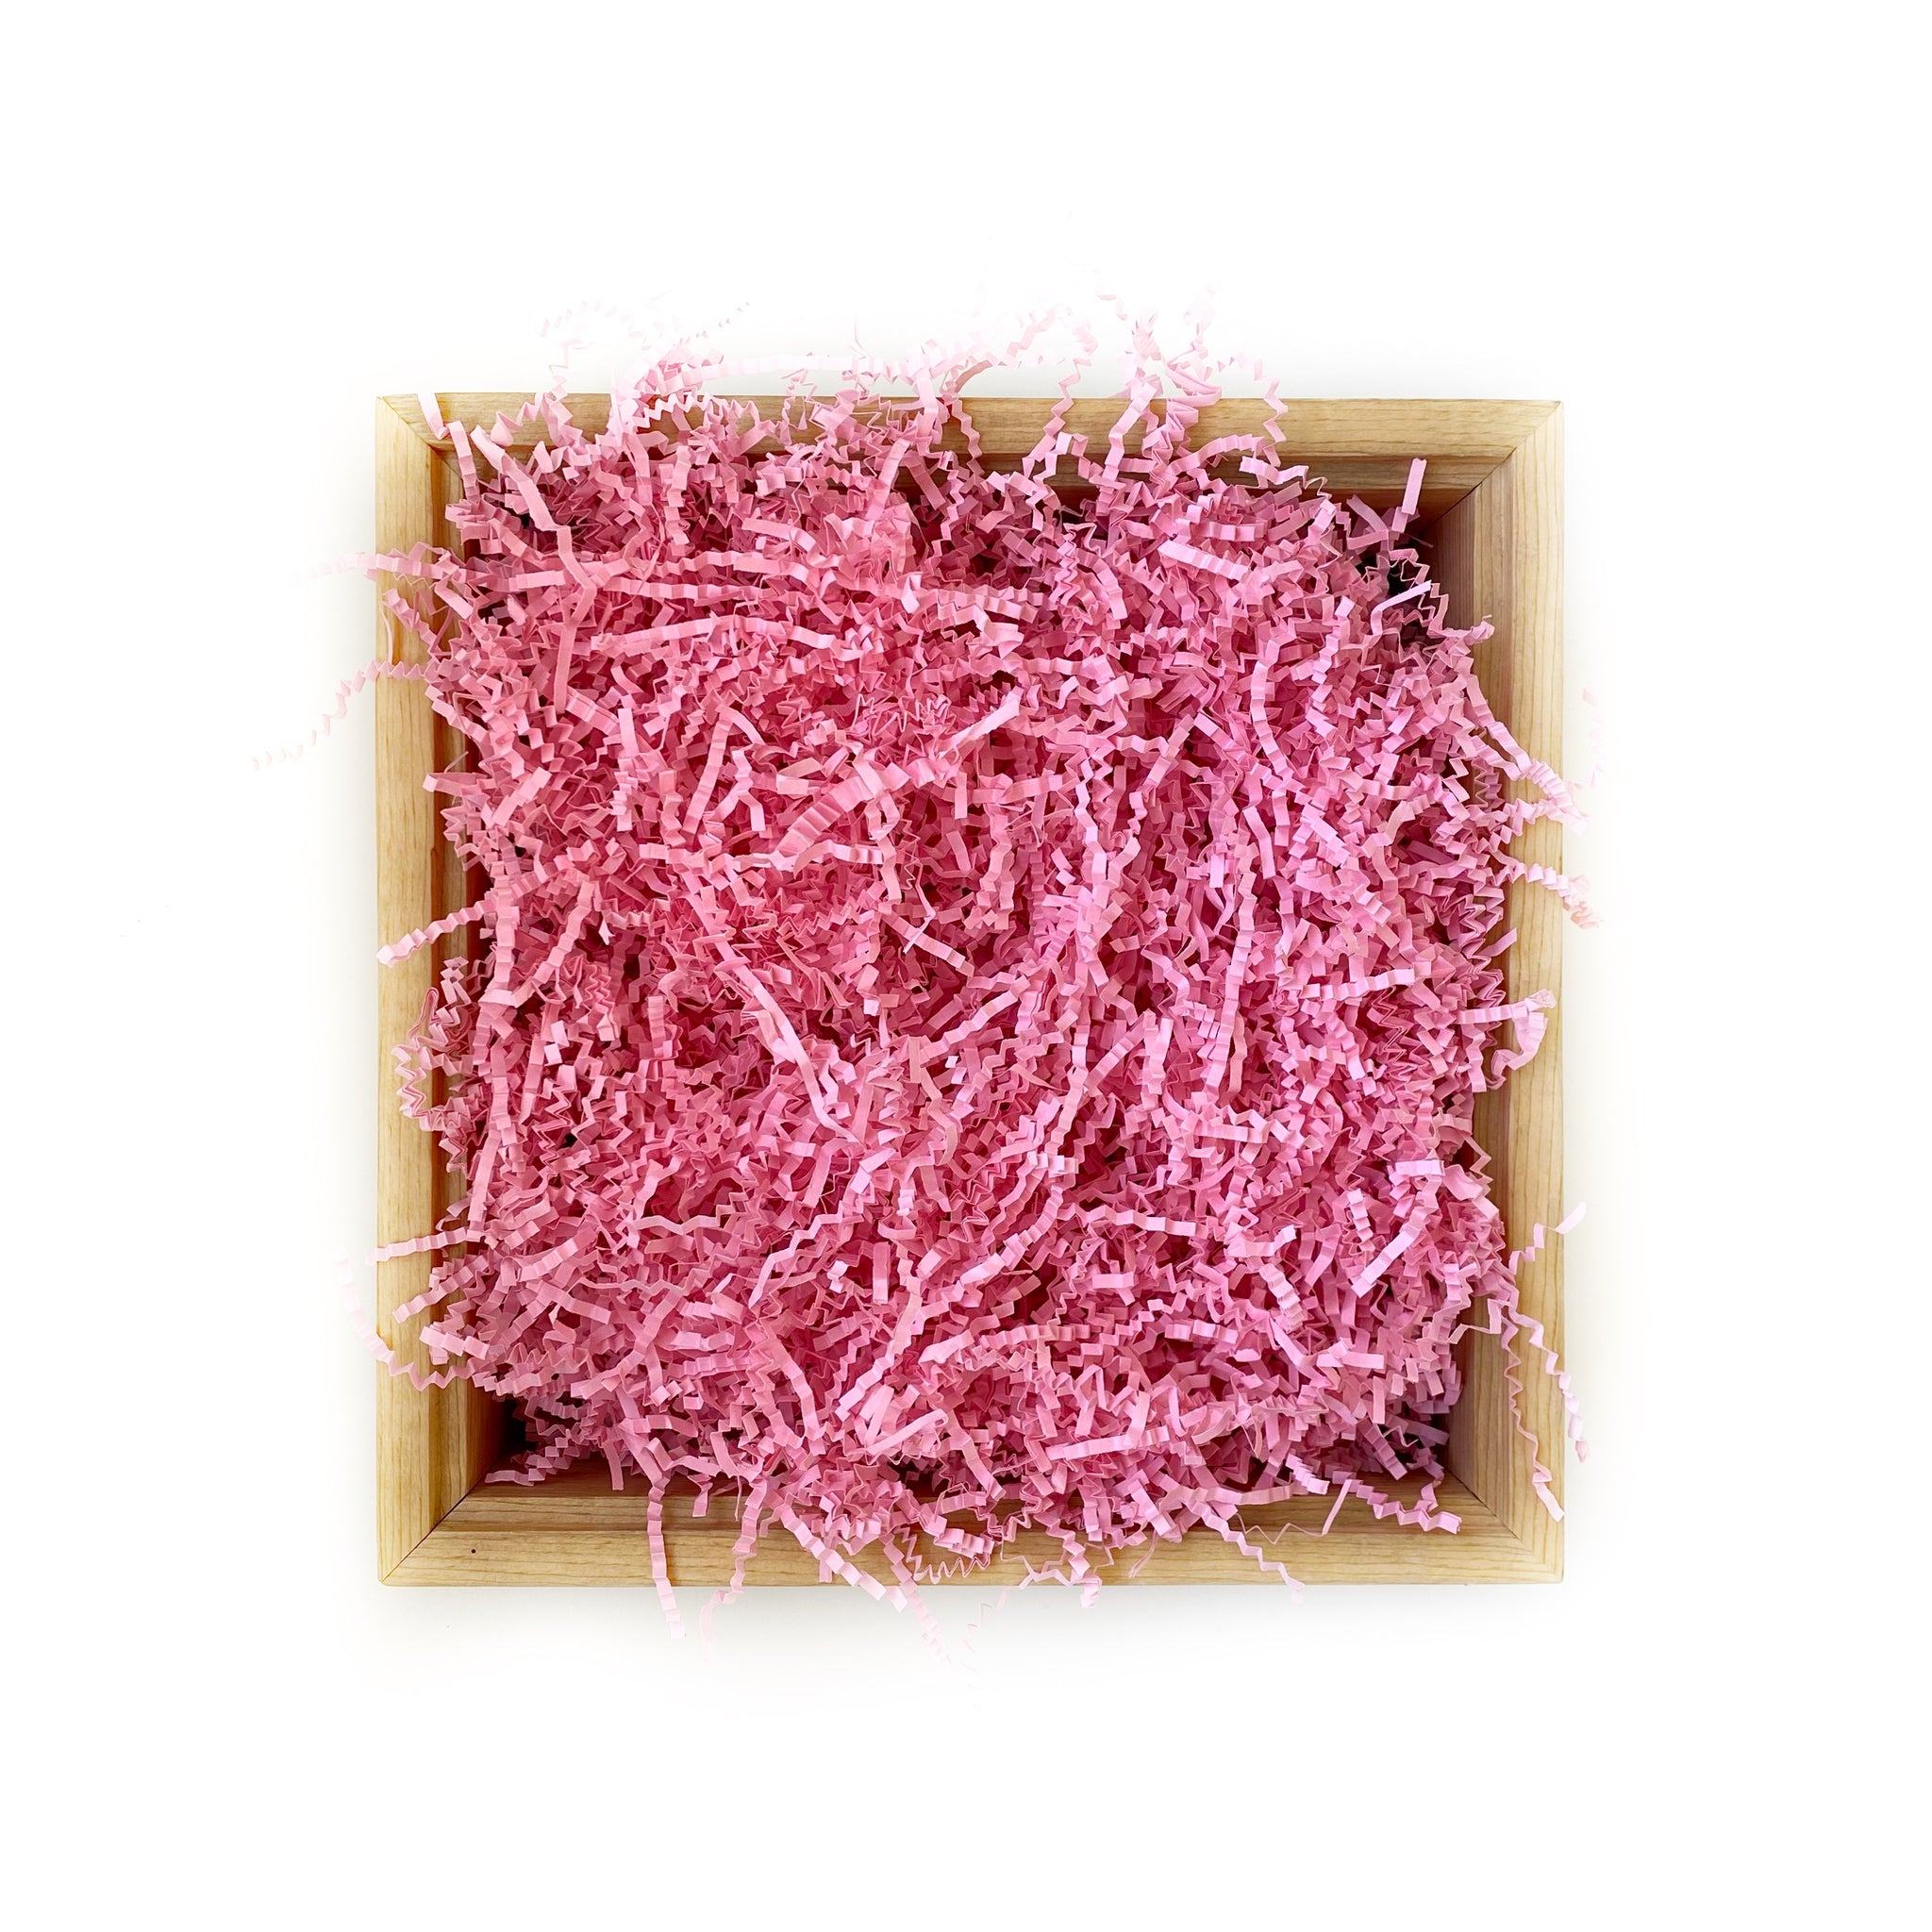 Brand New Bubblegum Pink Bulk Tissue Paper 15 Inch x 20 Inch - 100